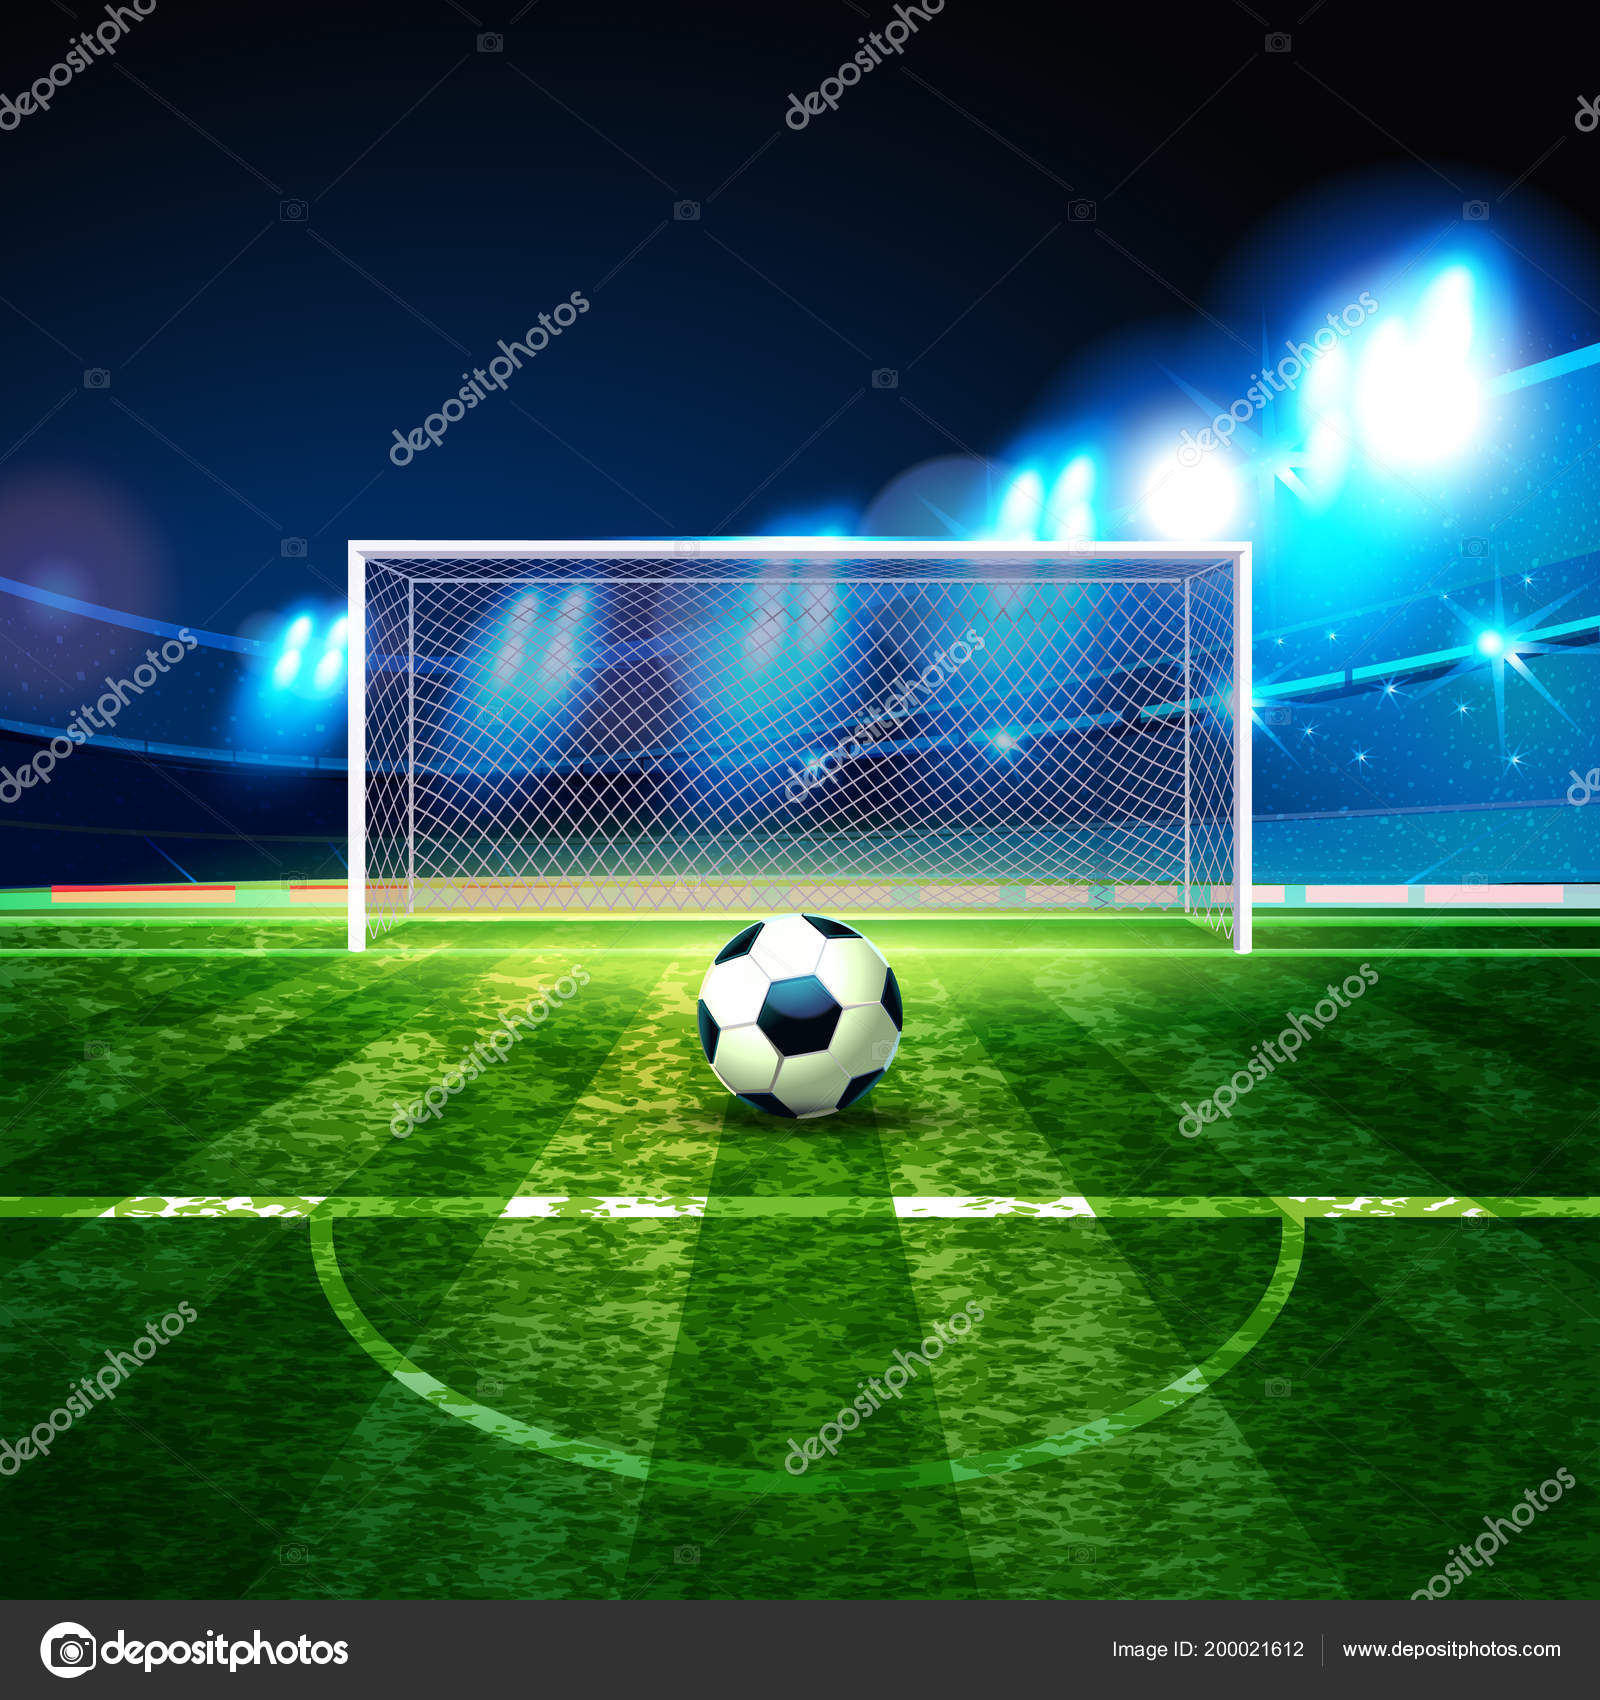 Vecteur Stock Soccer ball in goal net, side view. Goal moment of